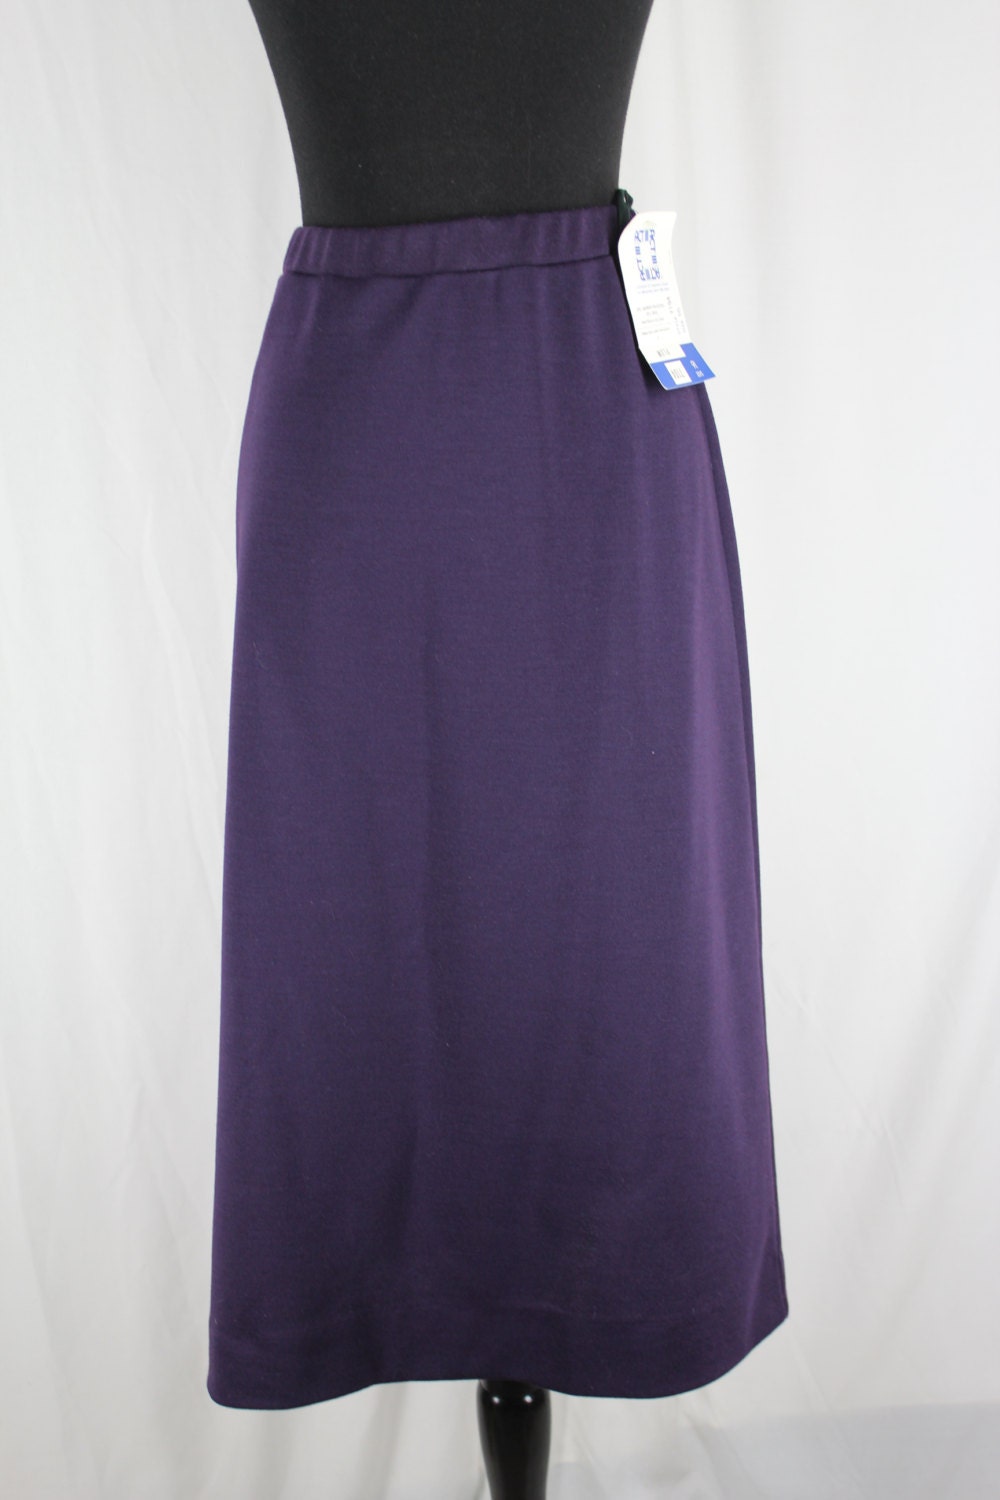 Vintage Skirt Act III Purple Plum Large NOS - Etsy